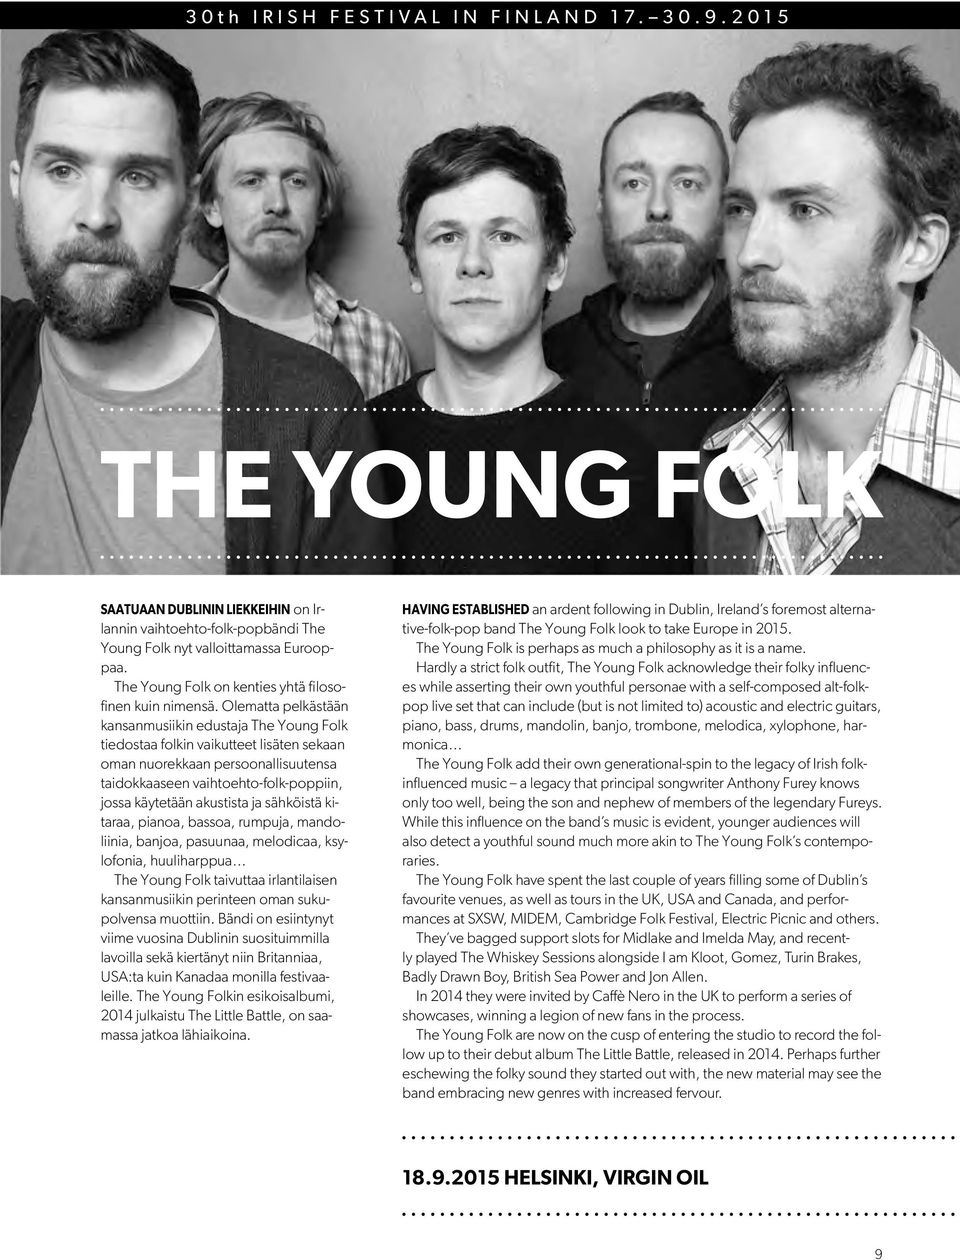 Olematta pelkästään kansanmusiikin edustaja The Young Folk tiedostaa folkin vaikutteet lisäten sekaan oman nuorekkaan persoonallisuutensa taidokkaaseen vaihtoehto-folk-poppiin, jossa käytetään